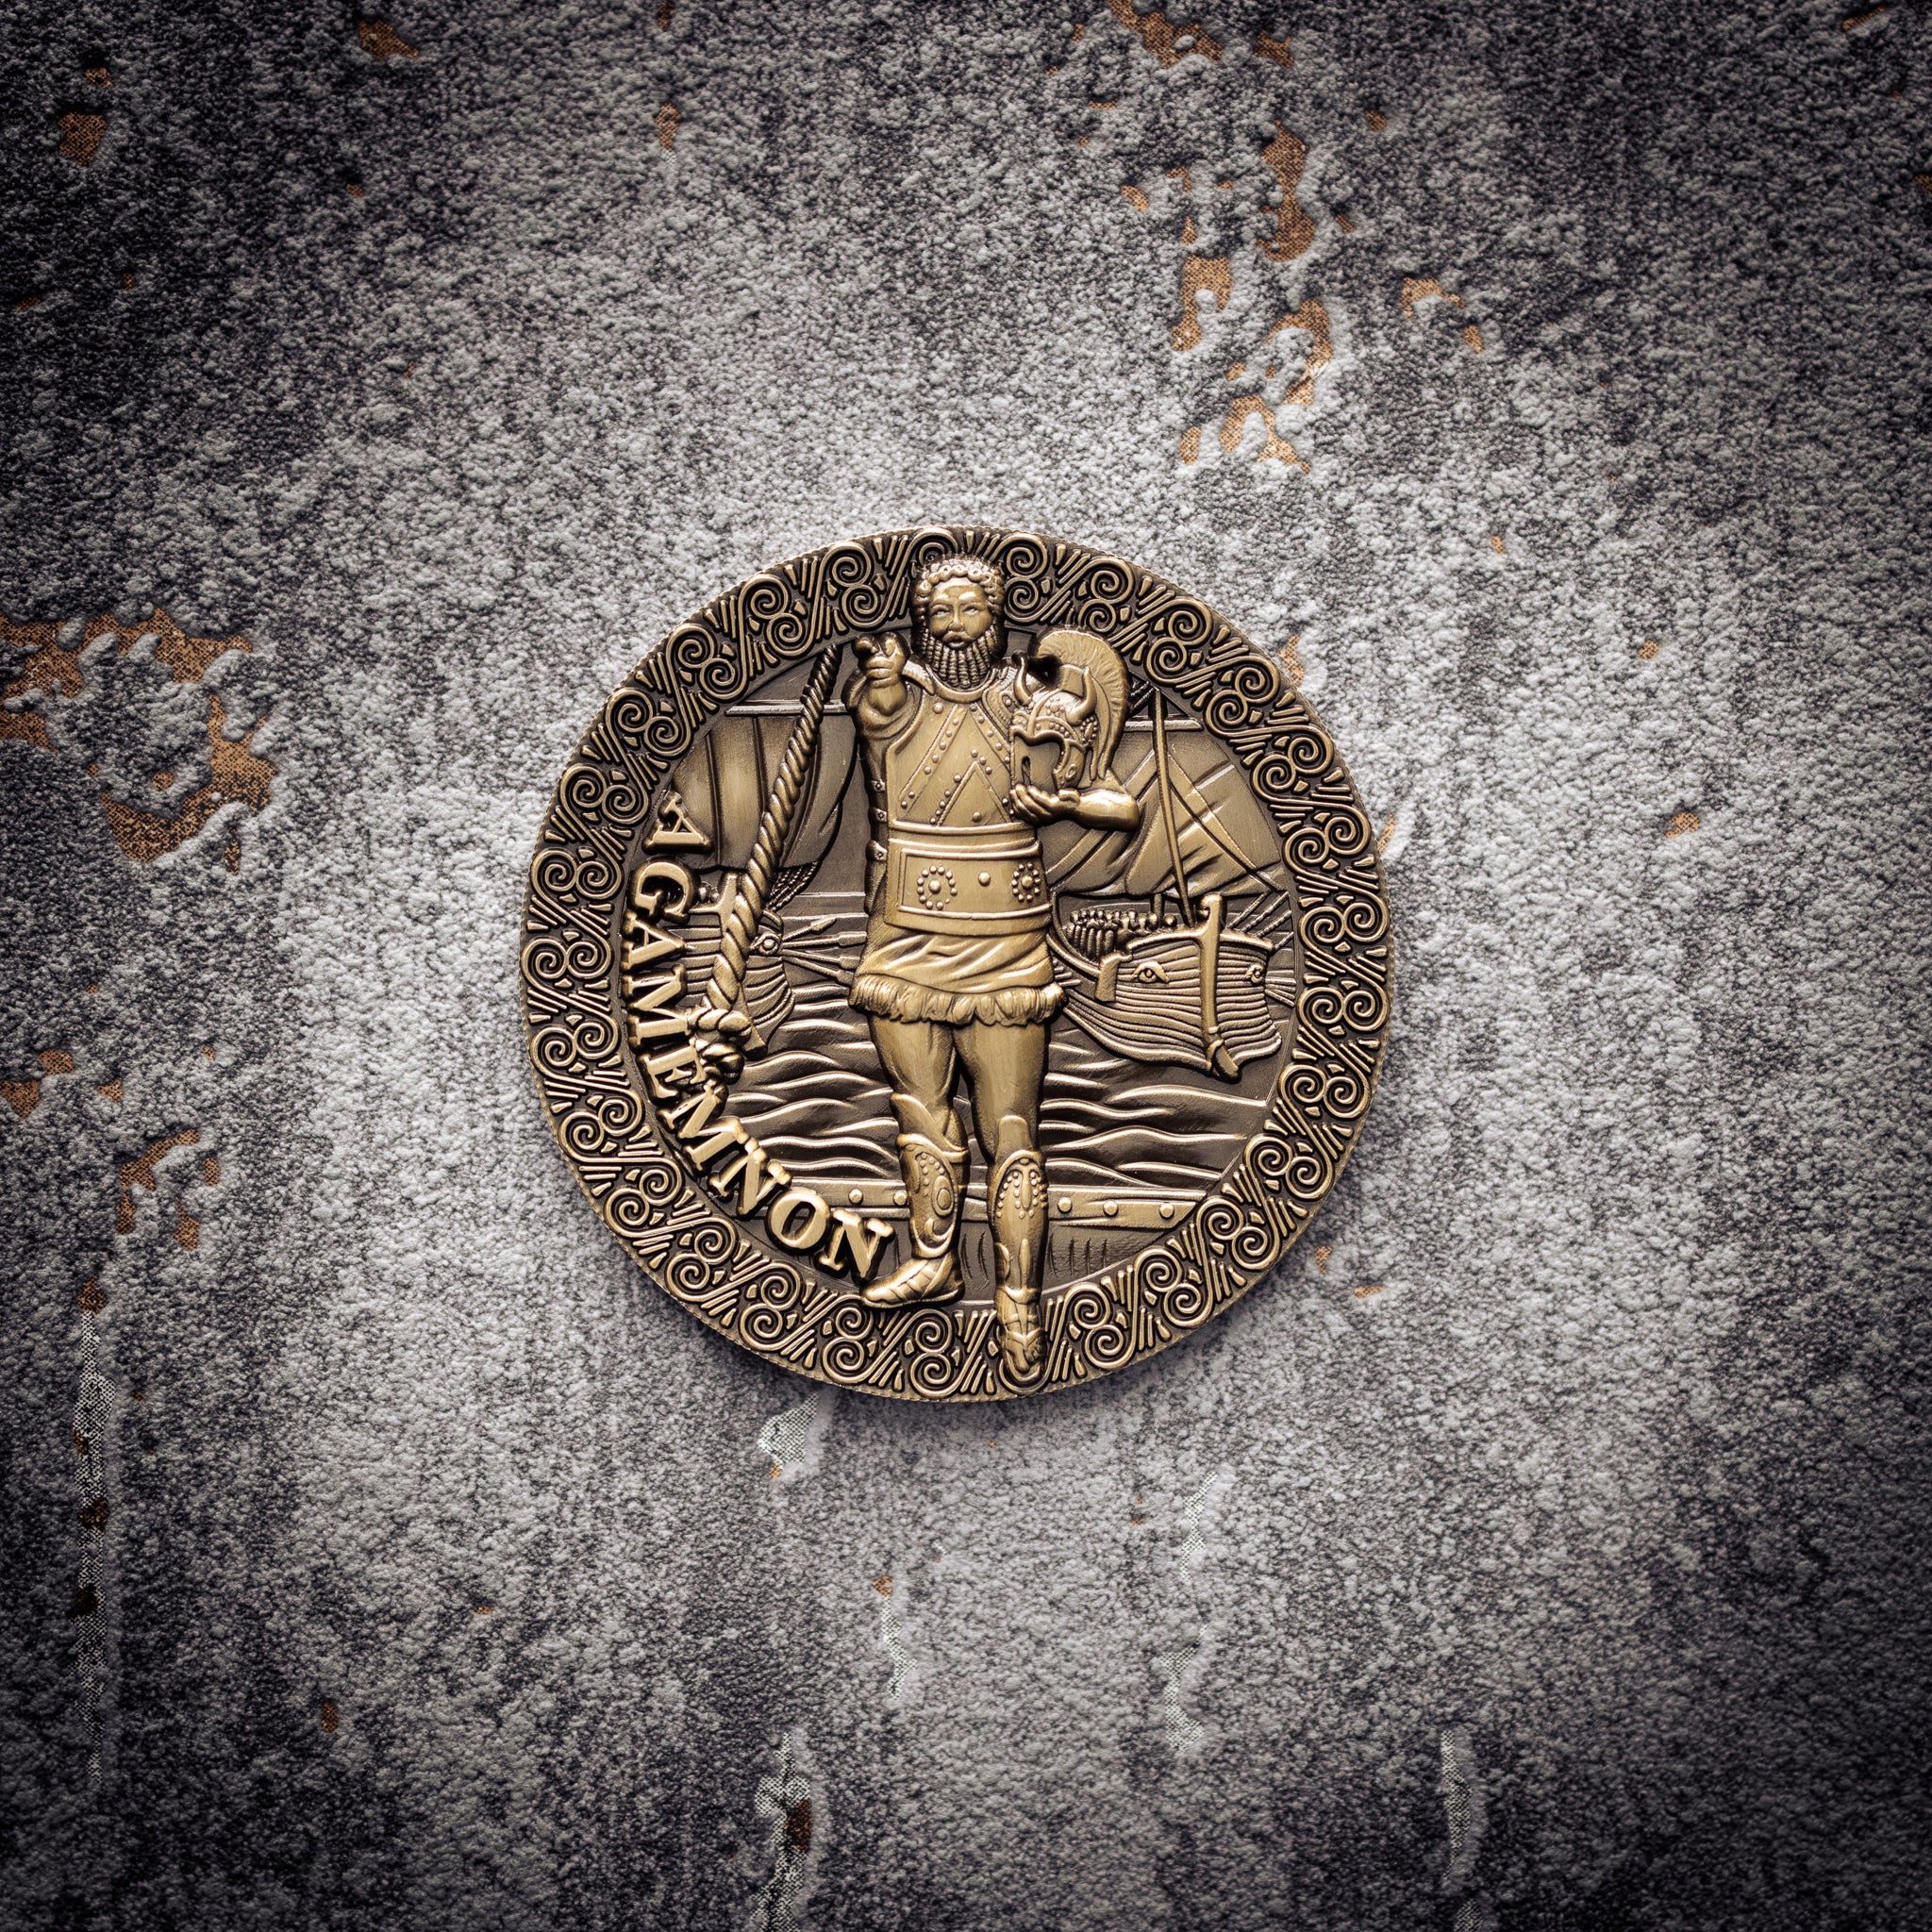 トロイ - アガメムノン 55mm コイン